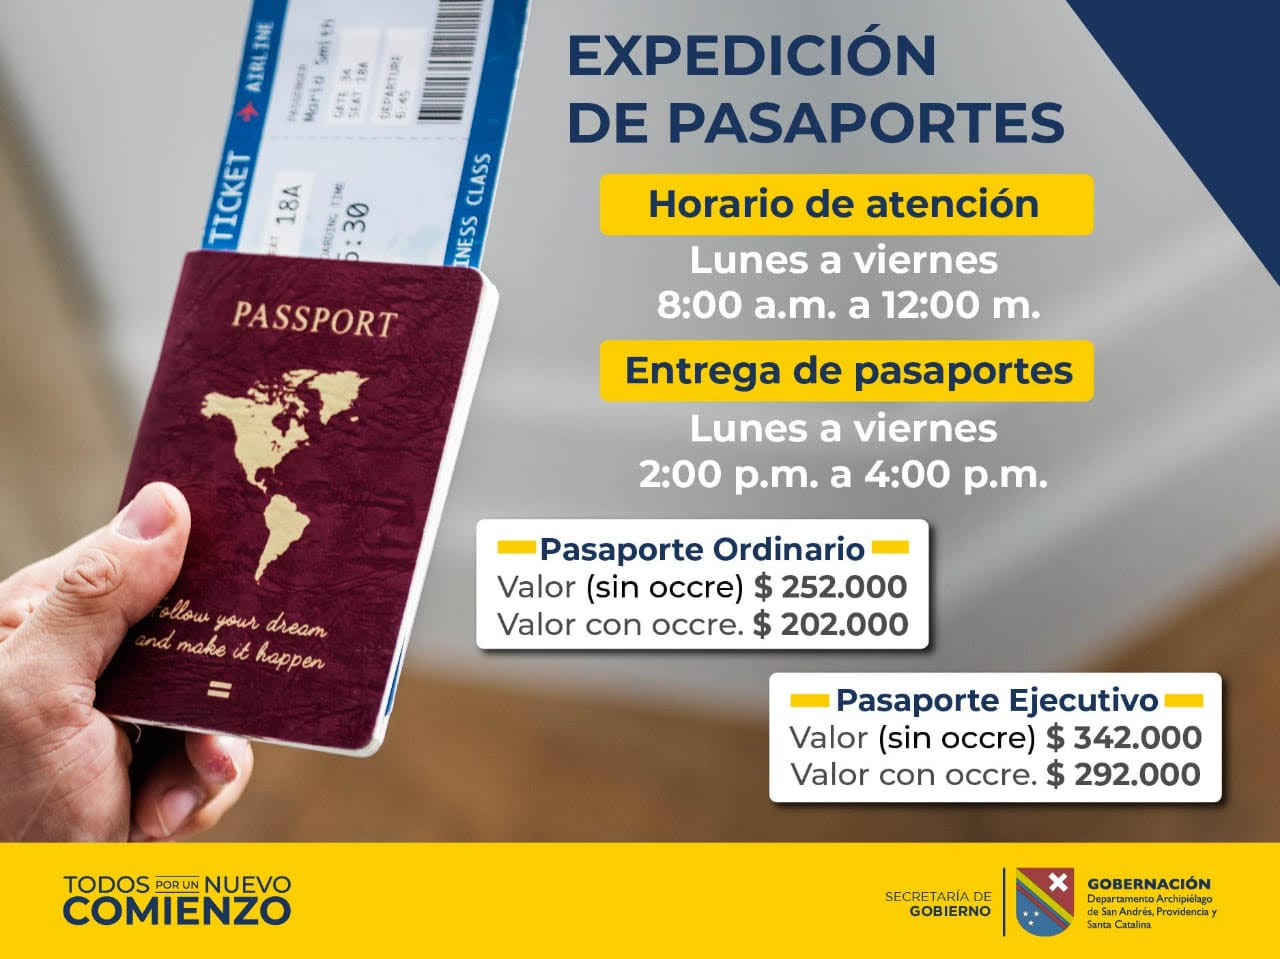 Expedición de pasaportes